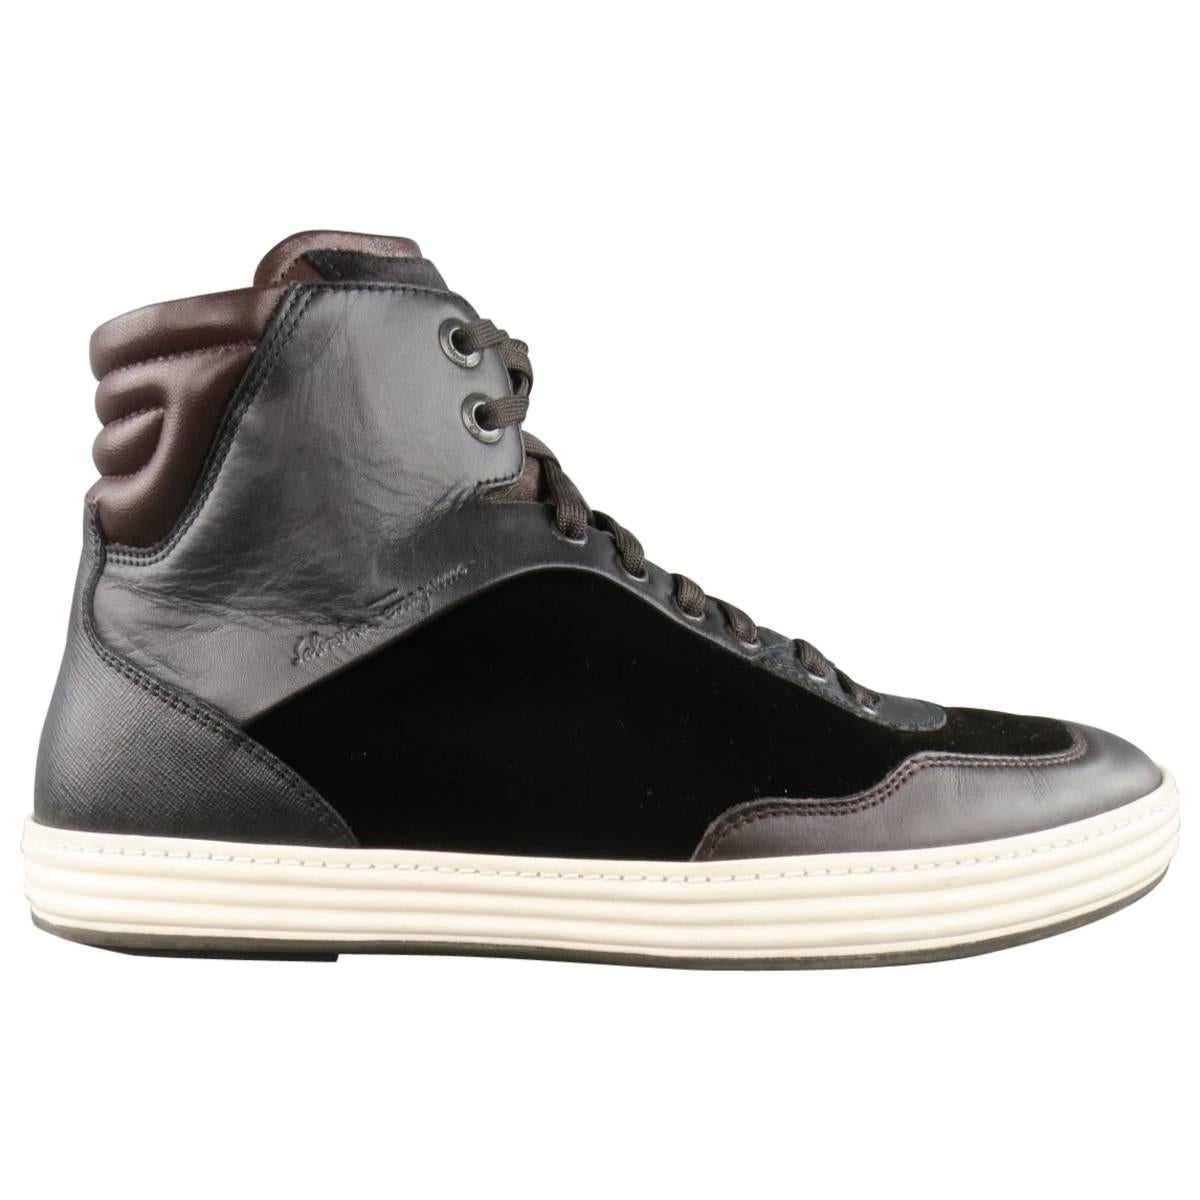 Men's SALVATORE FERRAGAMO Size 9.5 Brown Mixed Materials Velvet Sneakers